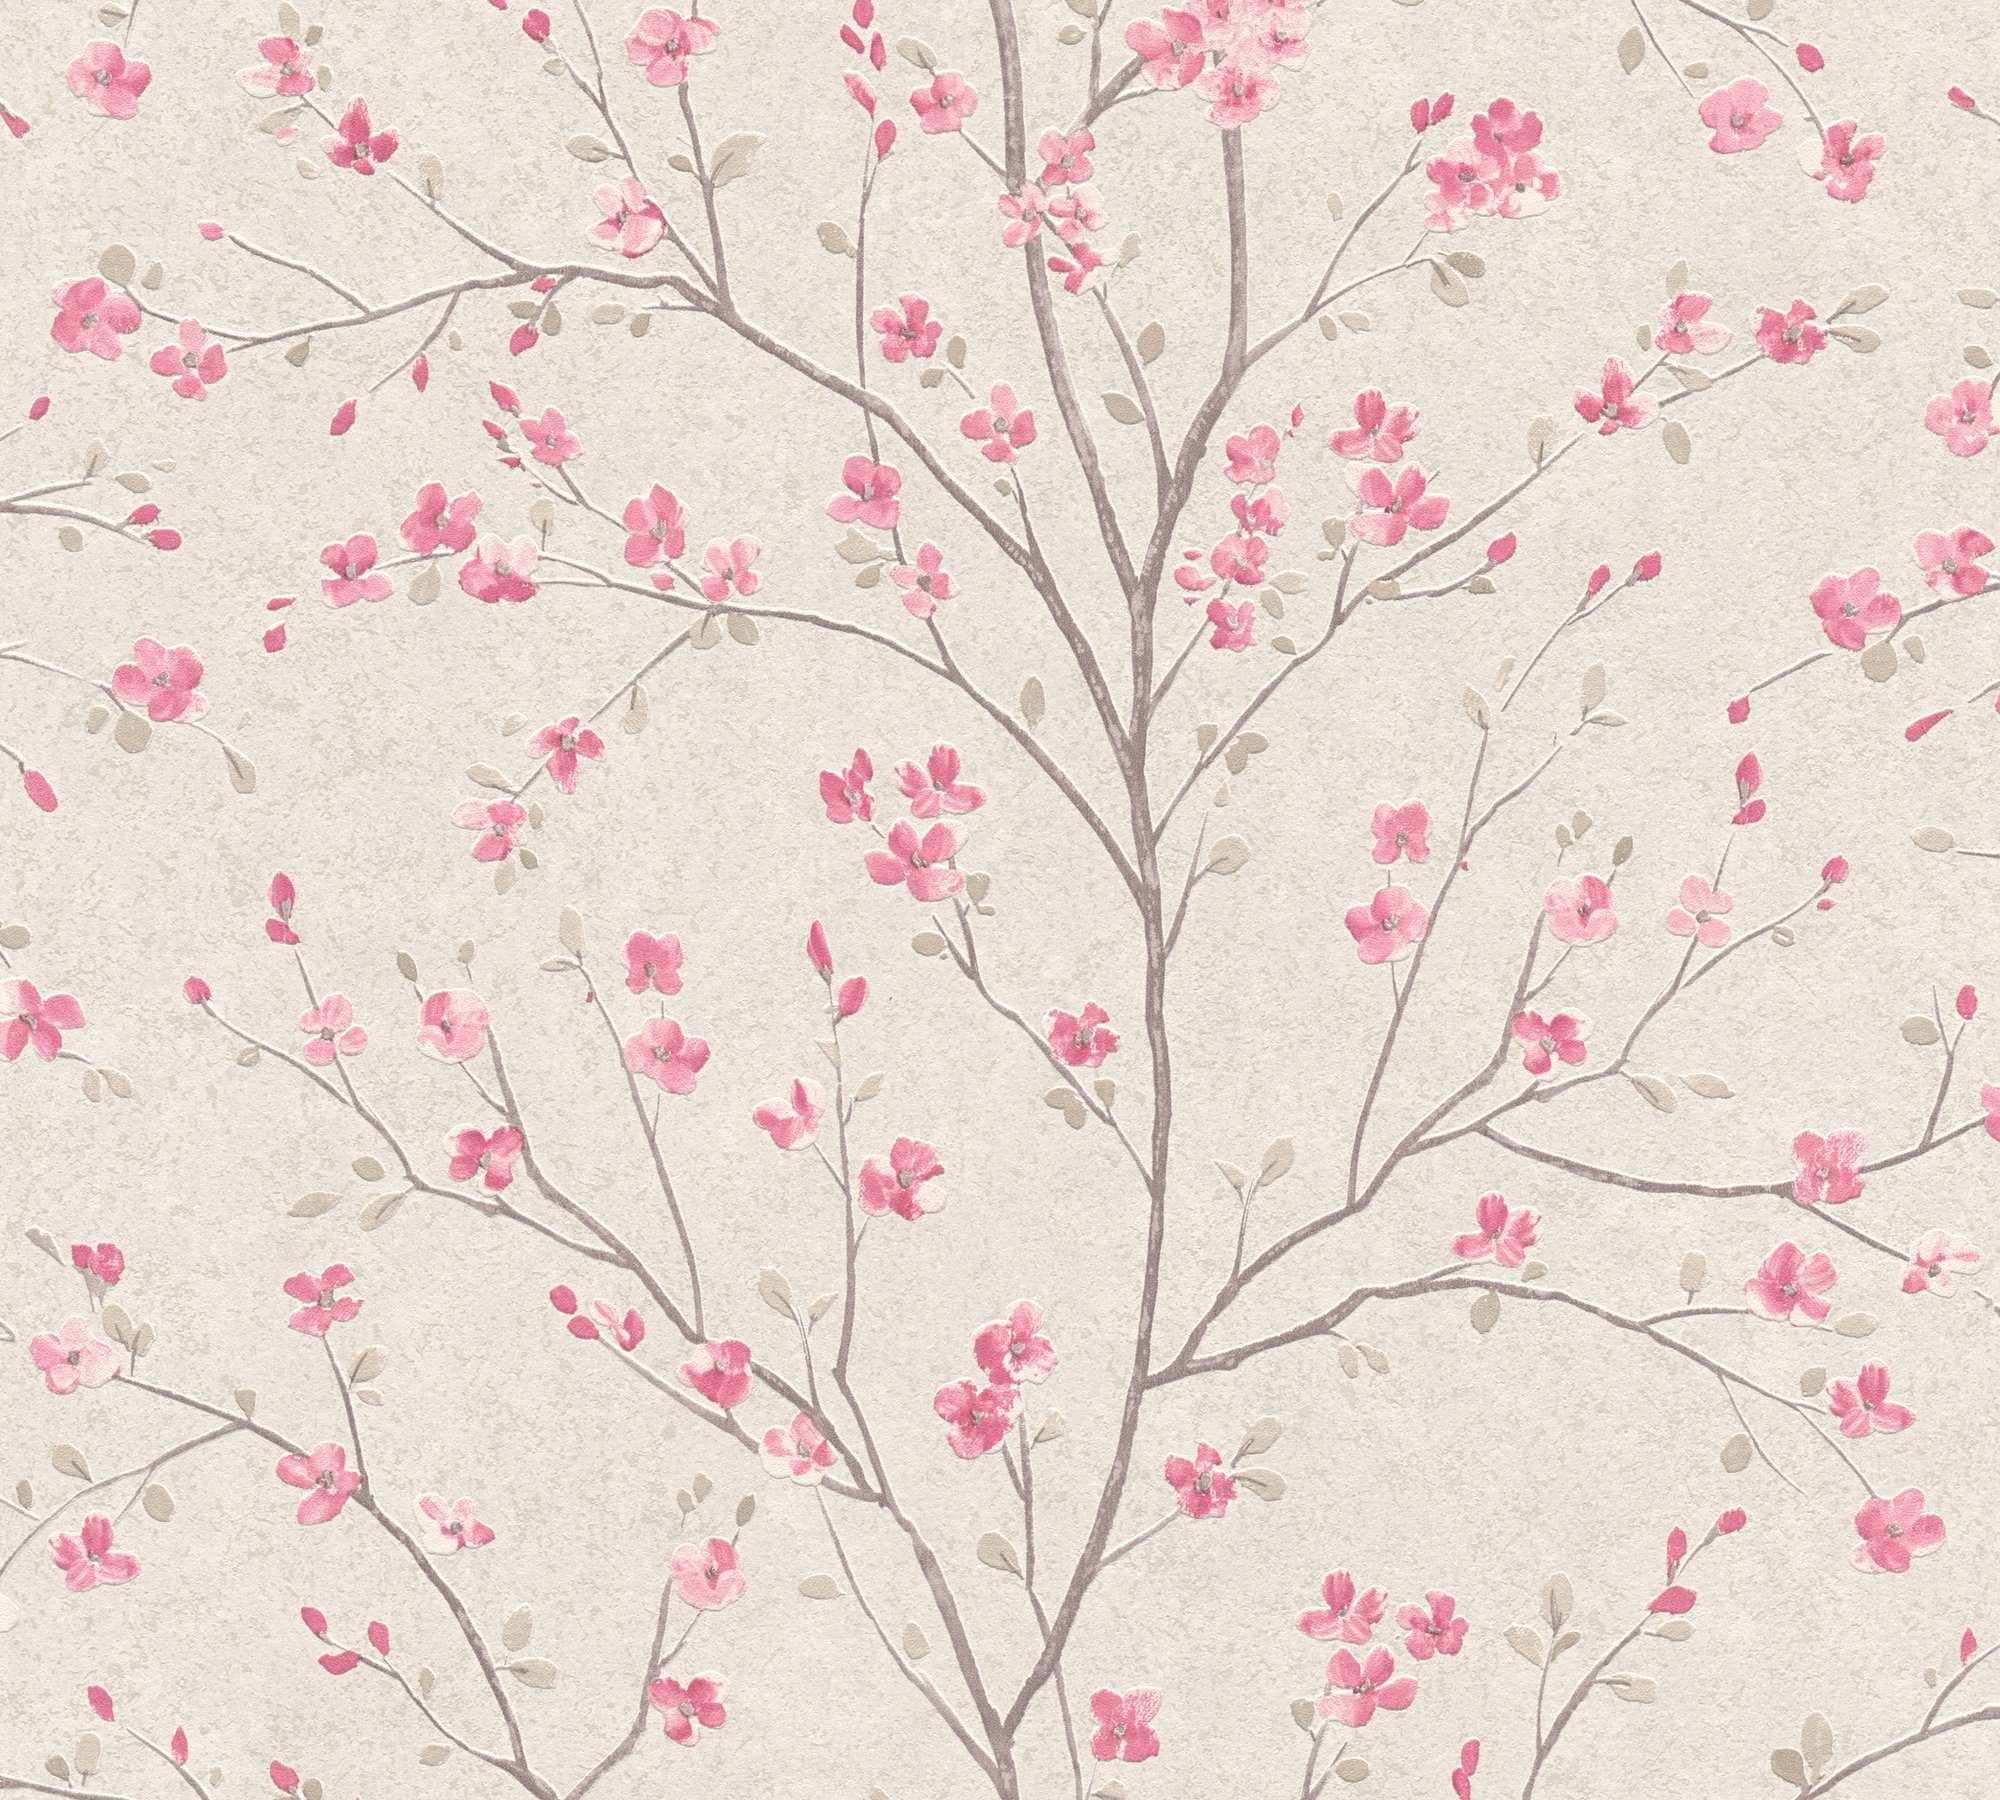 Création Mio Tapete A.S. living floral, rosa/weiß Tokio, walls Vliestapete Blumen Metropolitan botanisch, Stories,